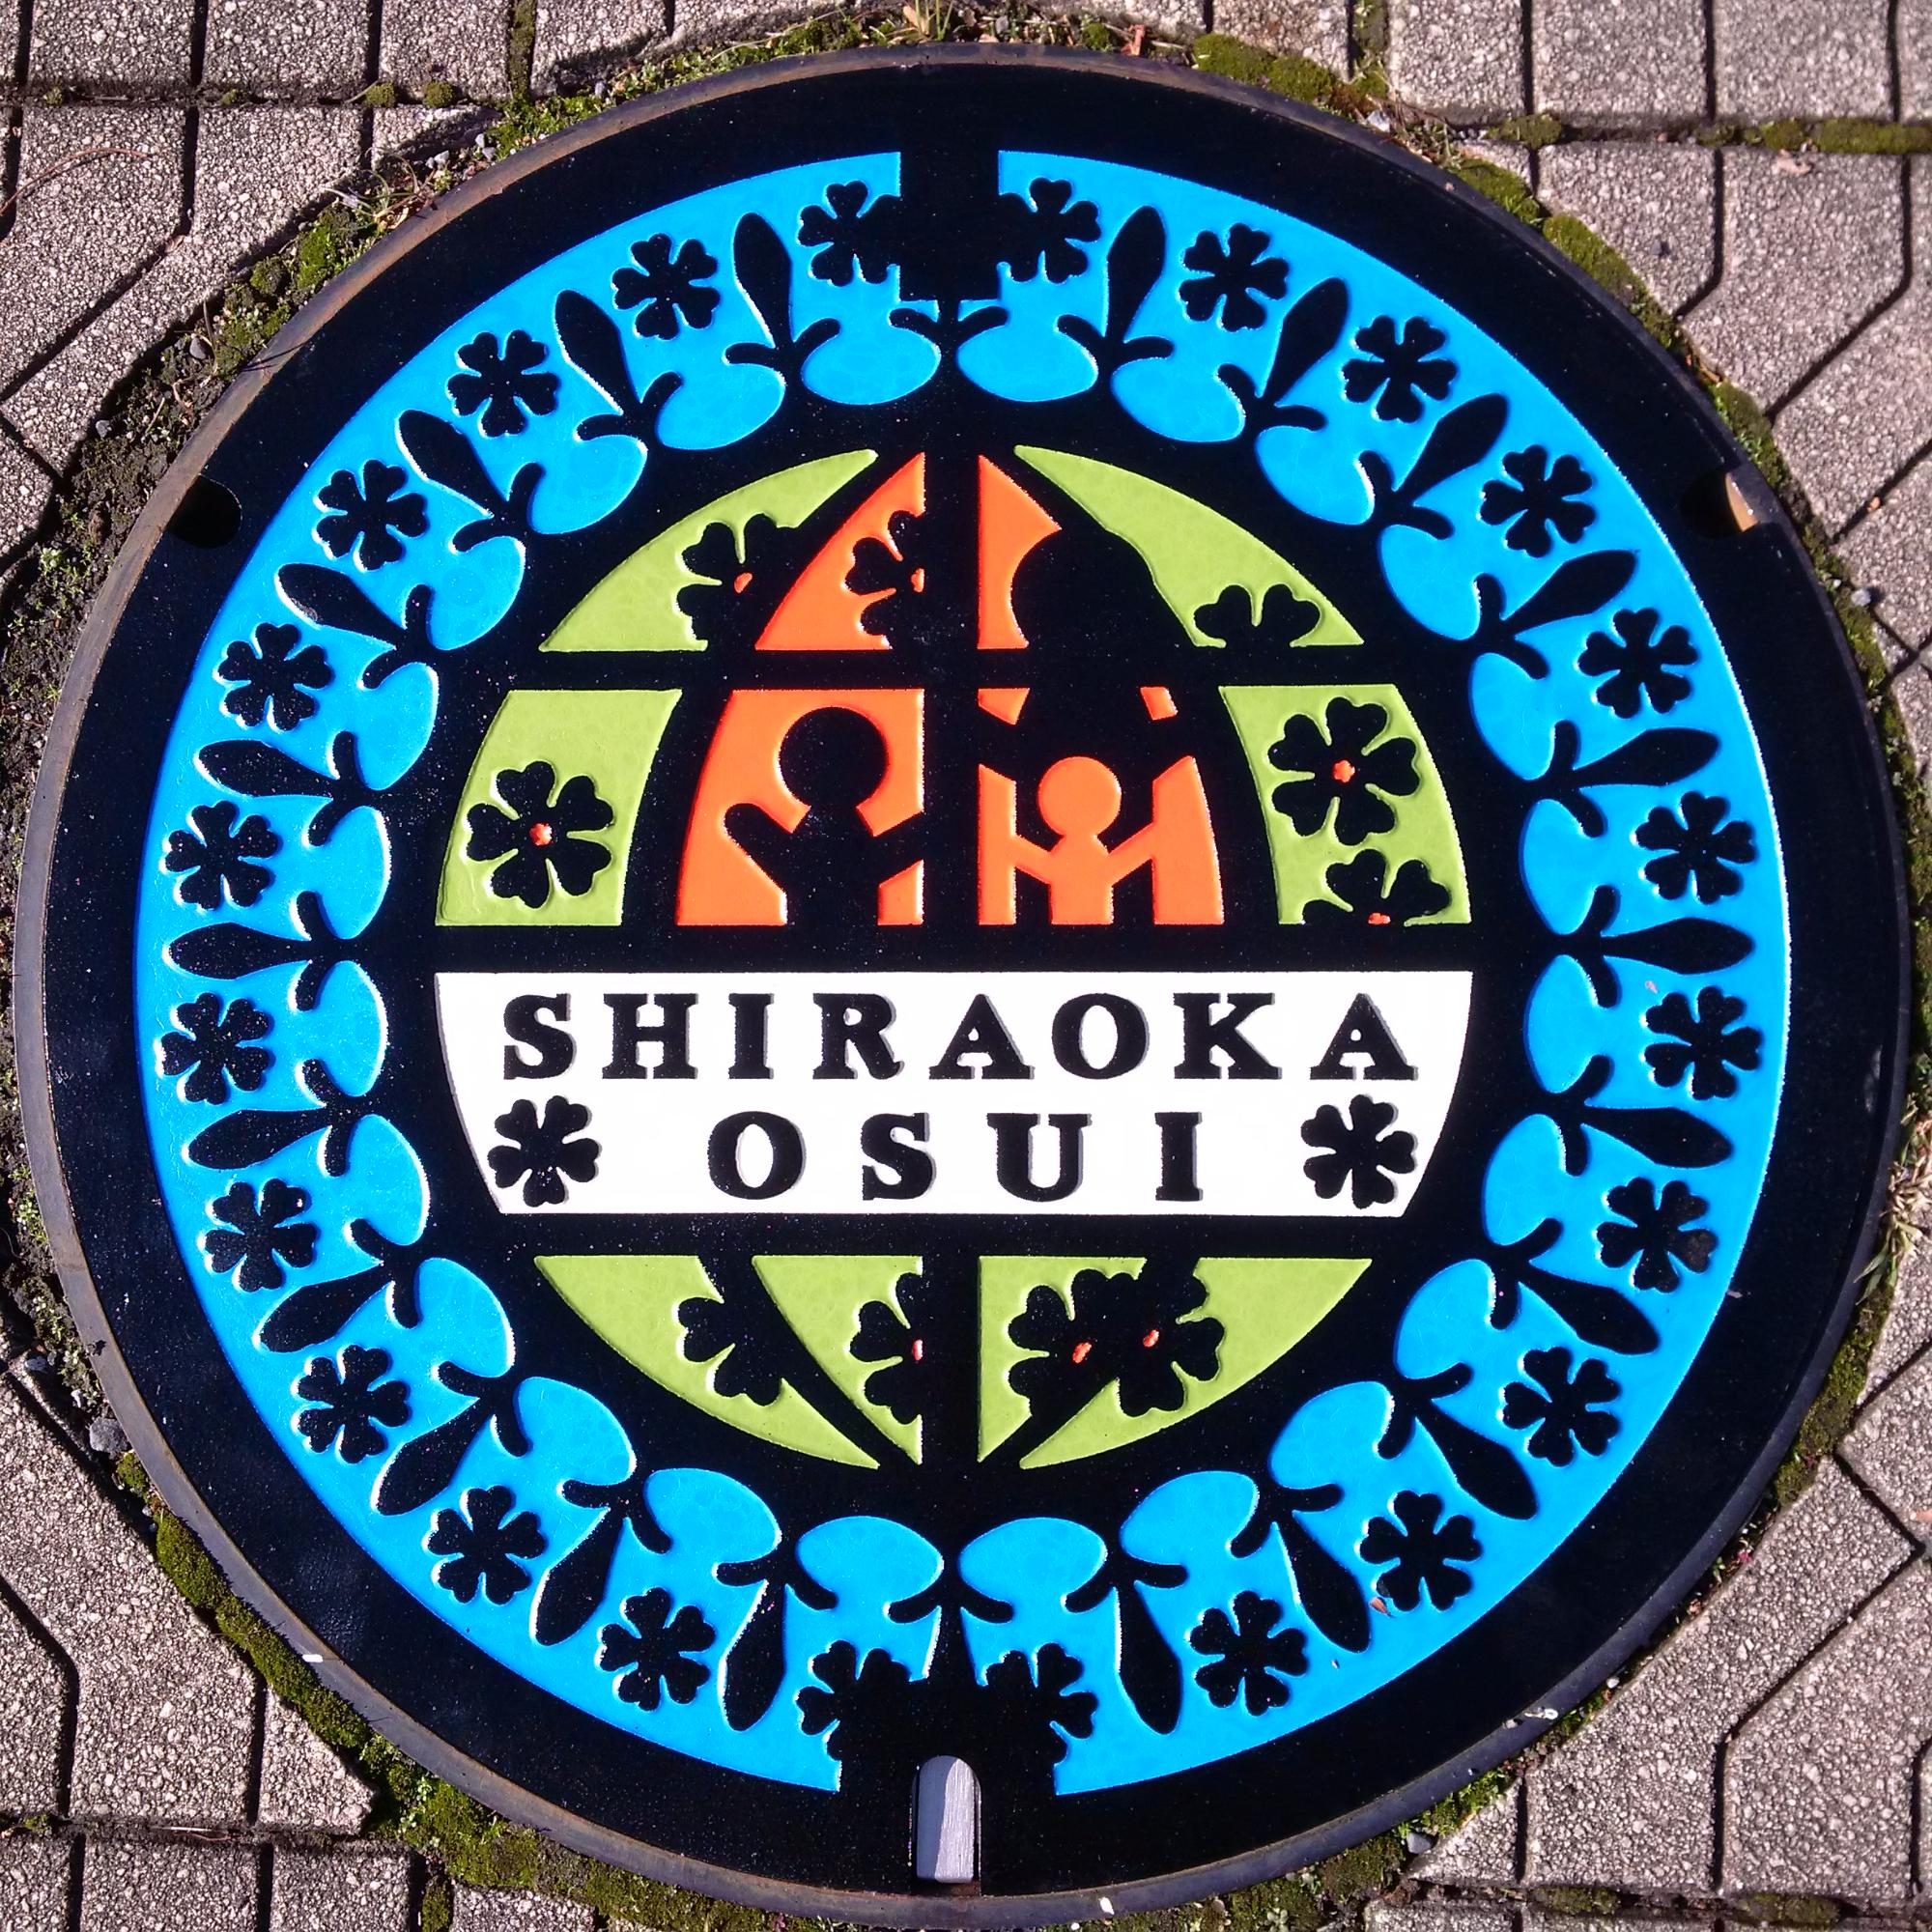 円の外側は青、中央に白地で「SHIRAOKA OSUI」と書かれその周りが緑とオレンジで着色されたカラーマンホールの写真